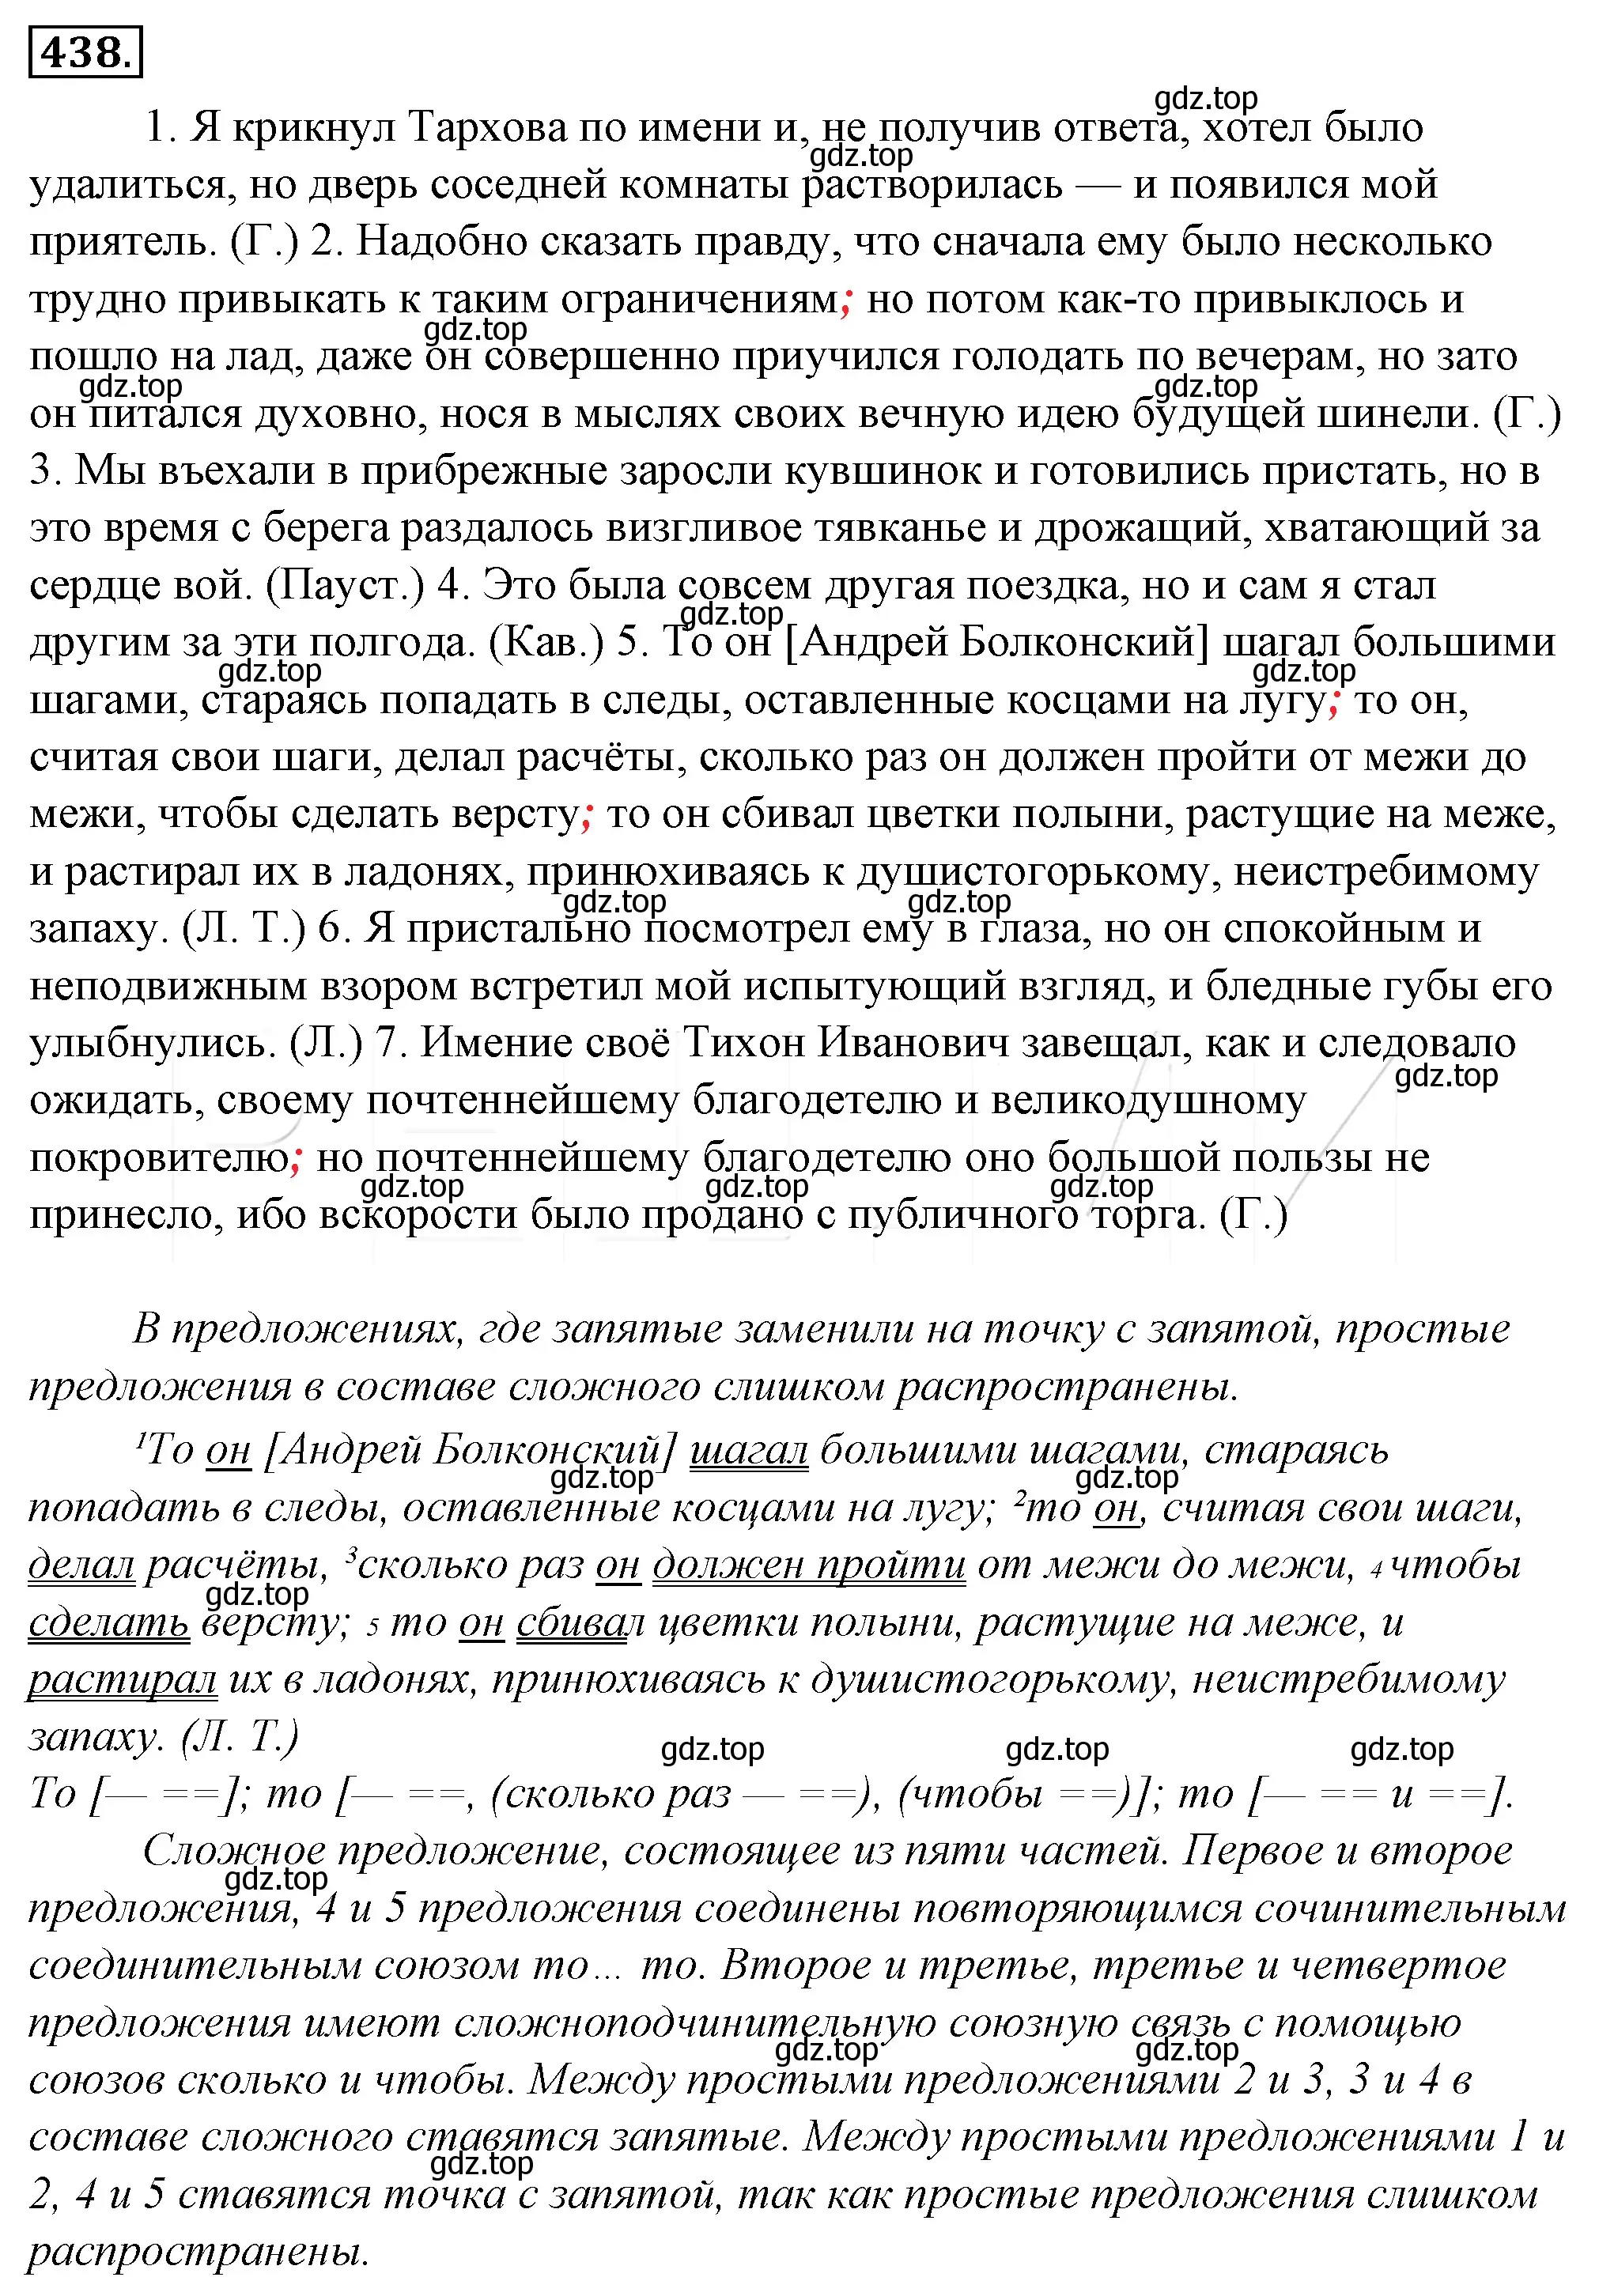 Решение 4. номер 103 (страница 138) гдз по русскому языку 10-11 класс Гольцова, Шамшин, учебник 2 часть